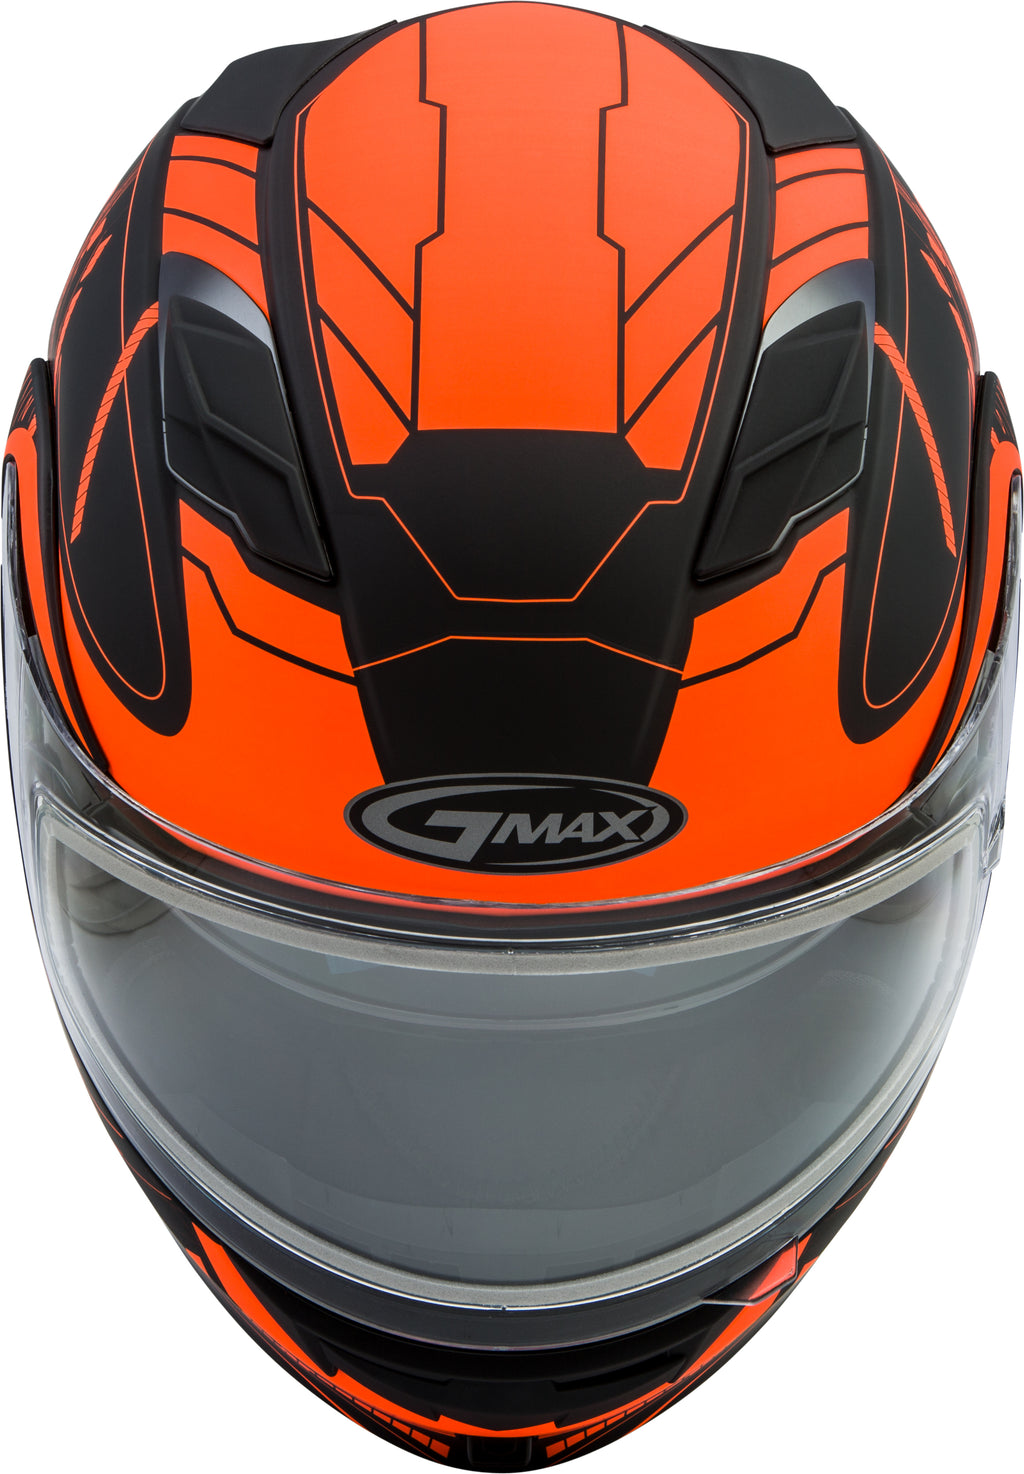 Md 01s Modular Wired Snow Helmet Black/Neon Orange Md